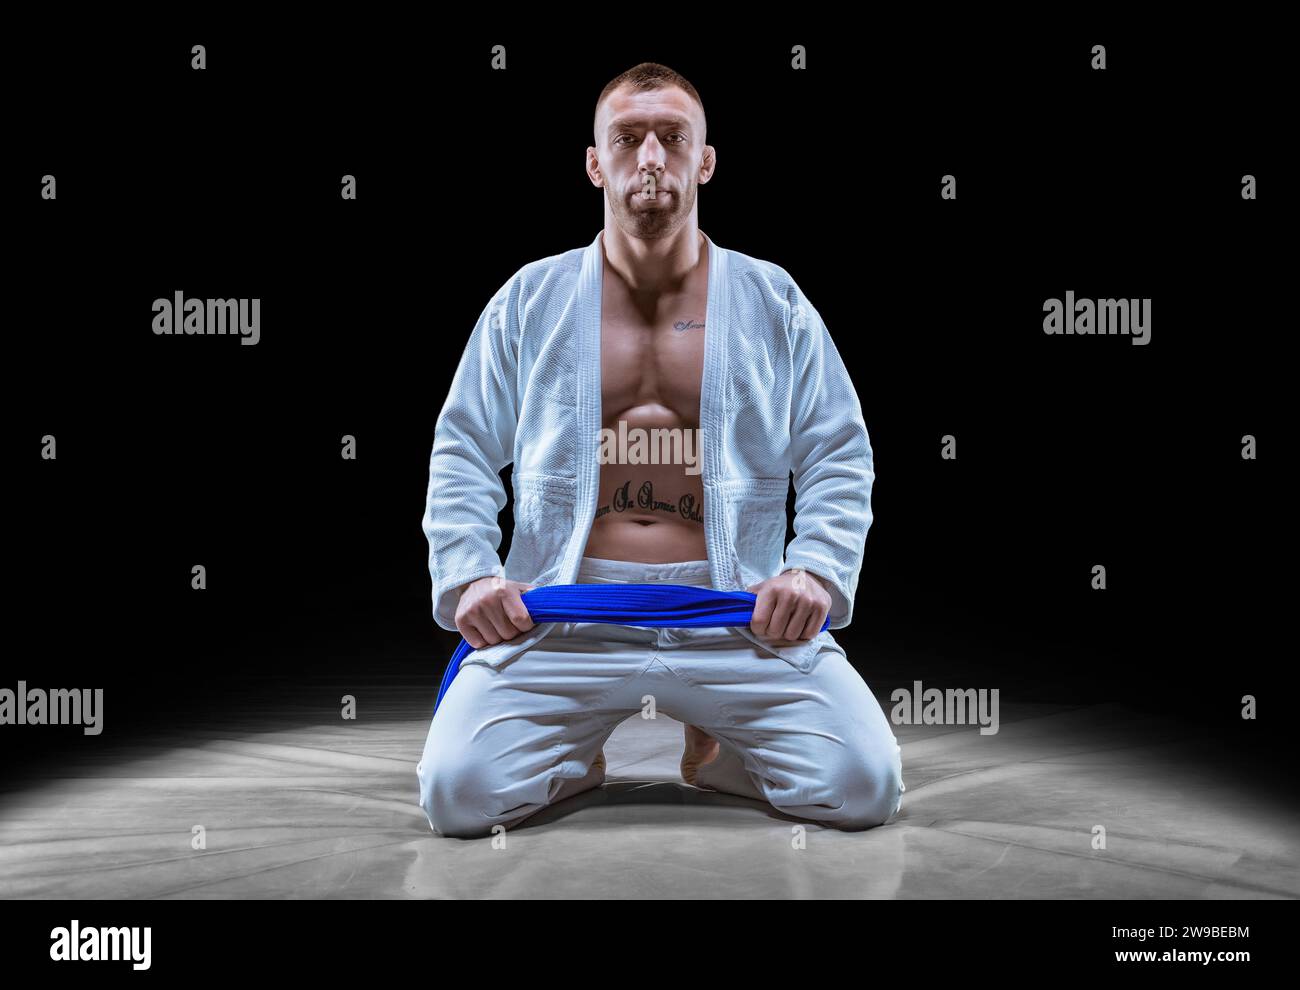 Profi-Athlet sitzt im Fitnessstudio in einem Kimono mit blauem Gürtel. Konzept von Karate, Jiu-Jitsu, Sambo, Judo. Gemischte Medien Stockfoto